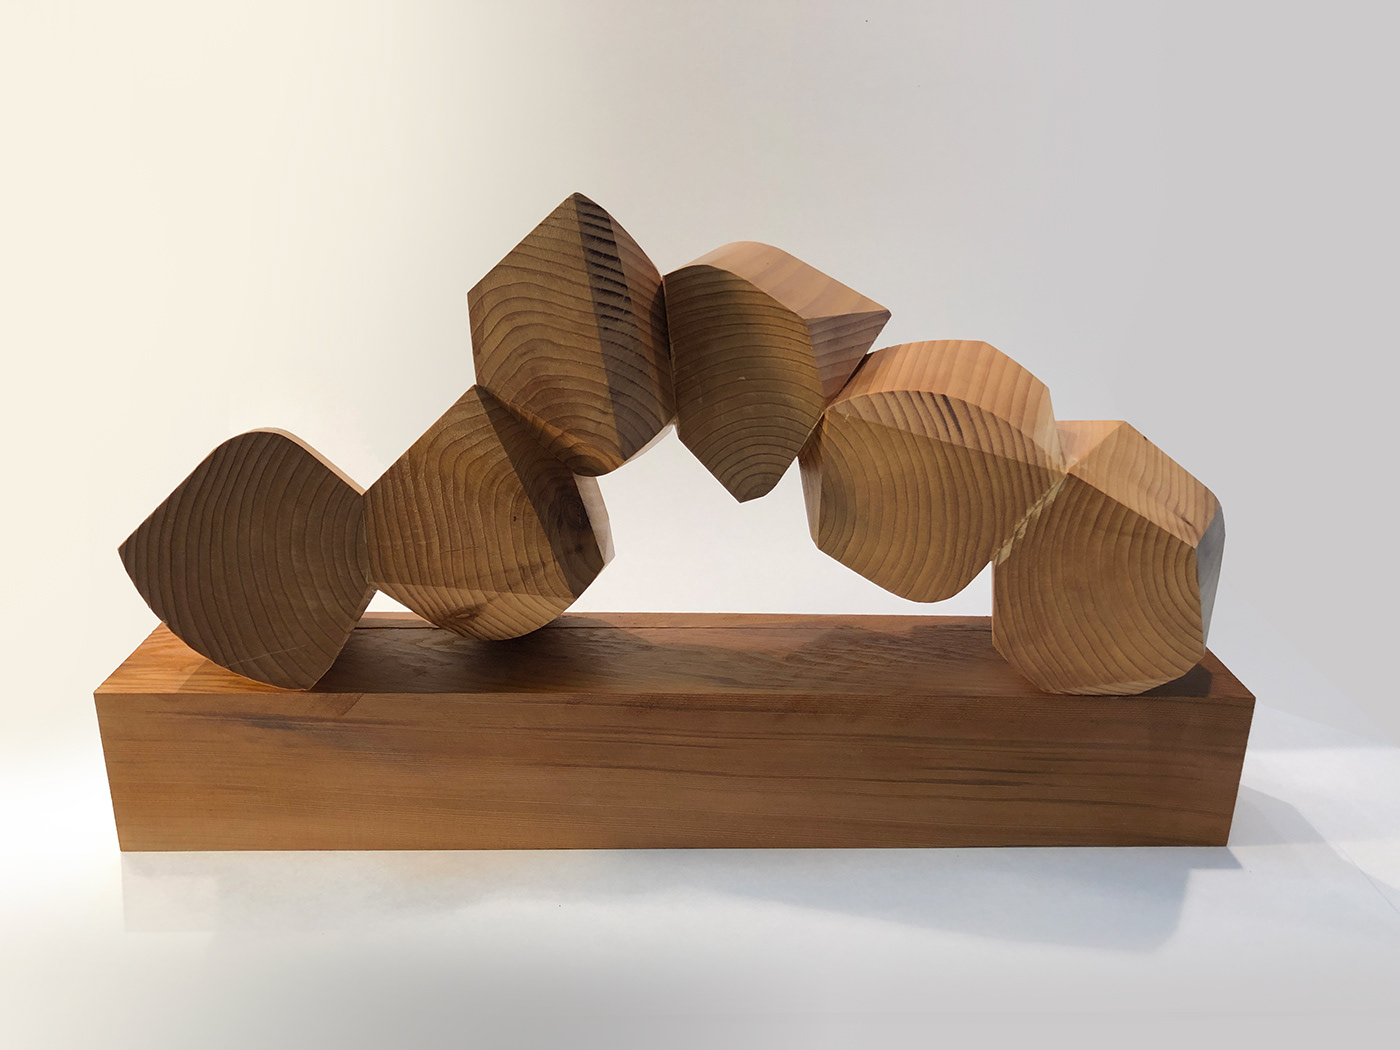 conceptualsculpture handcrafted sculpture unwantedchange wood woodensculpture